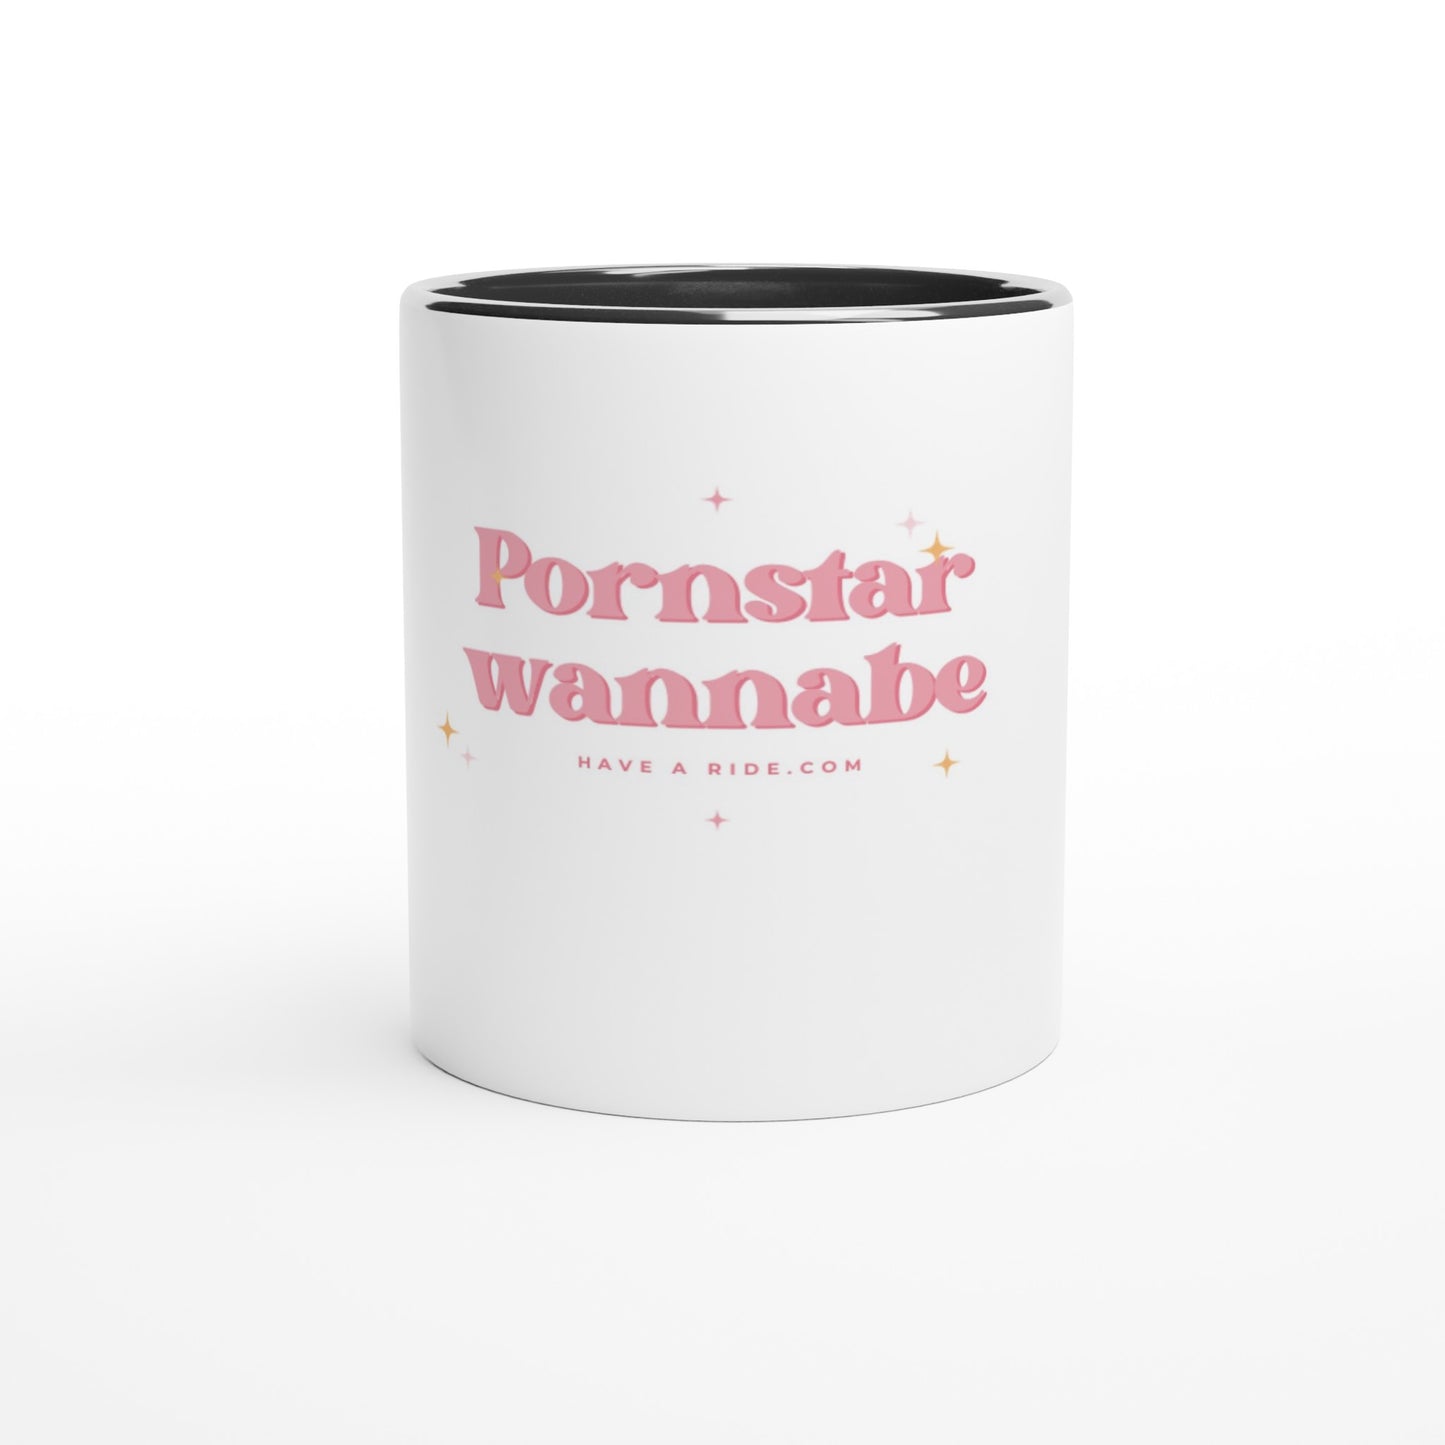 Pornstar wannabe - White 11oz Ceramic Mug with Color Inside